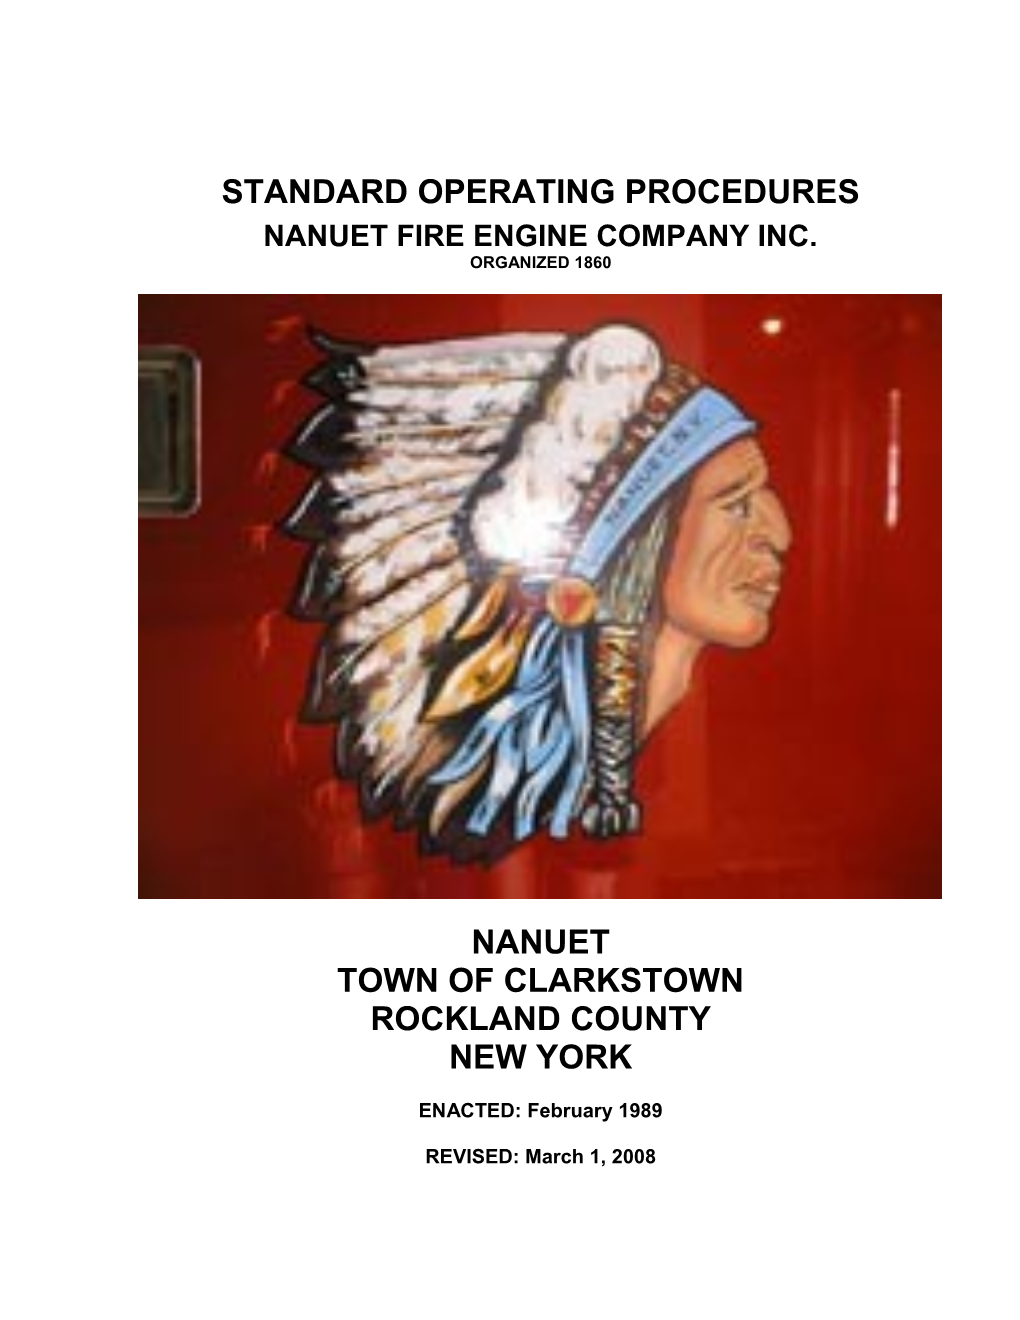 Standard Operating Procedures s2